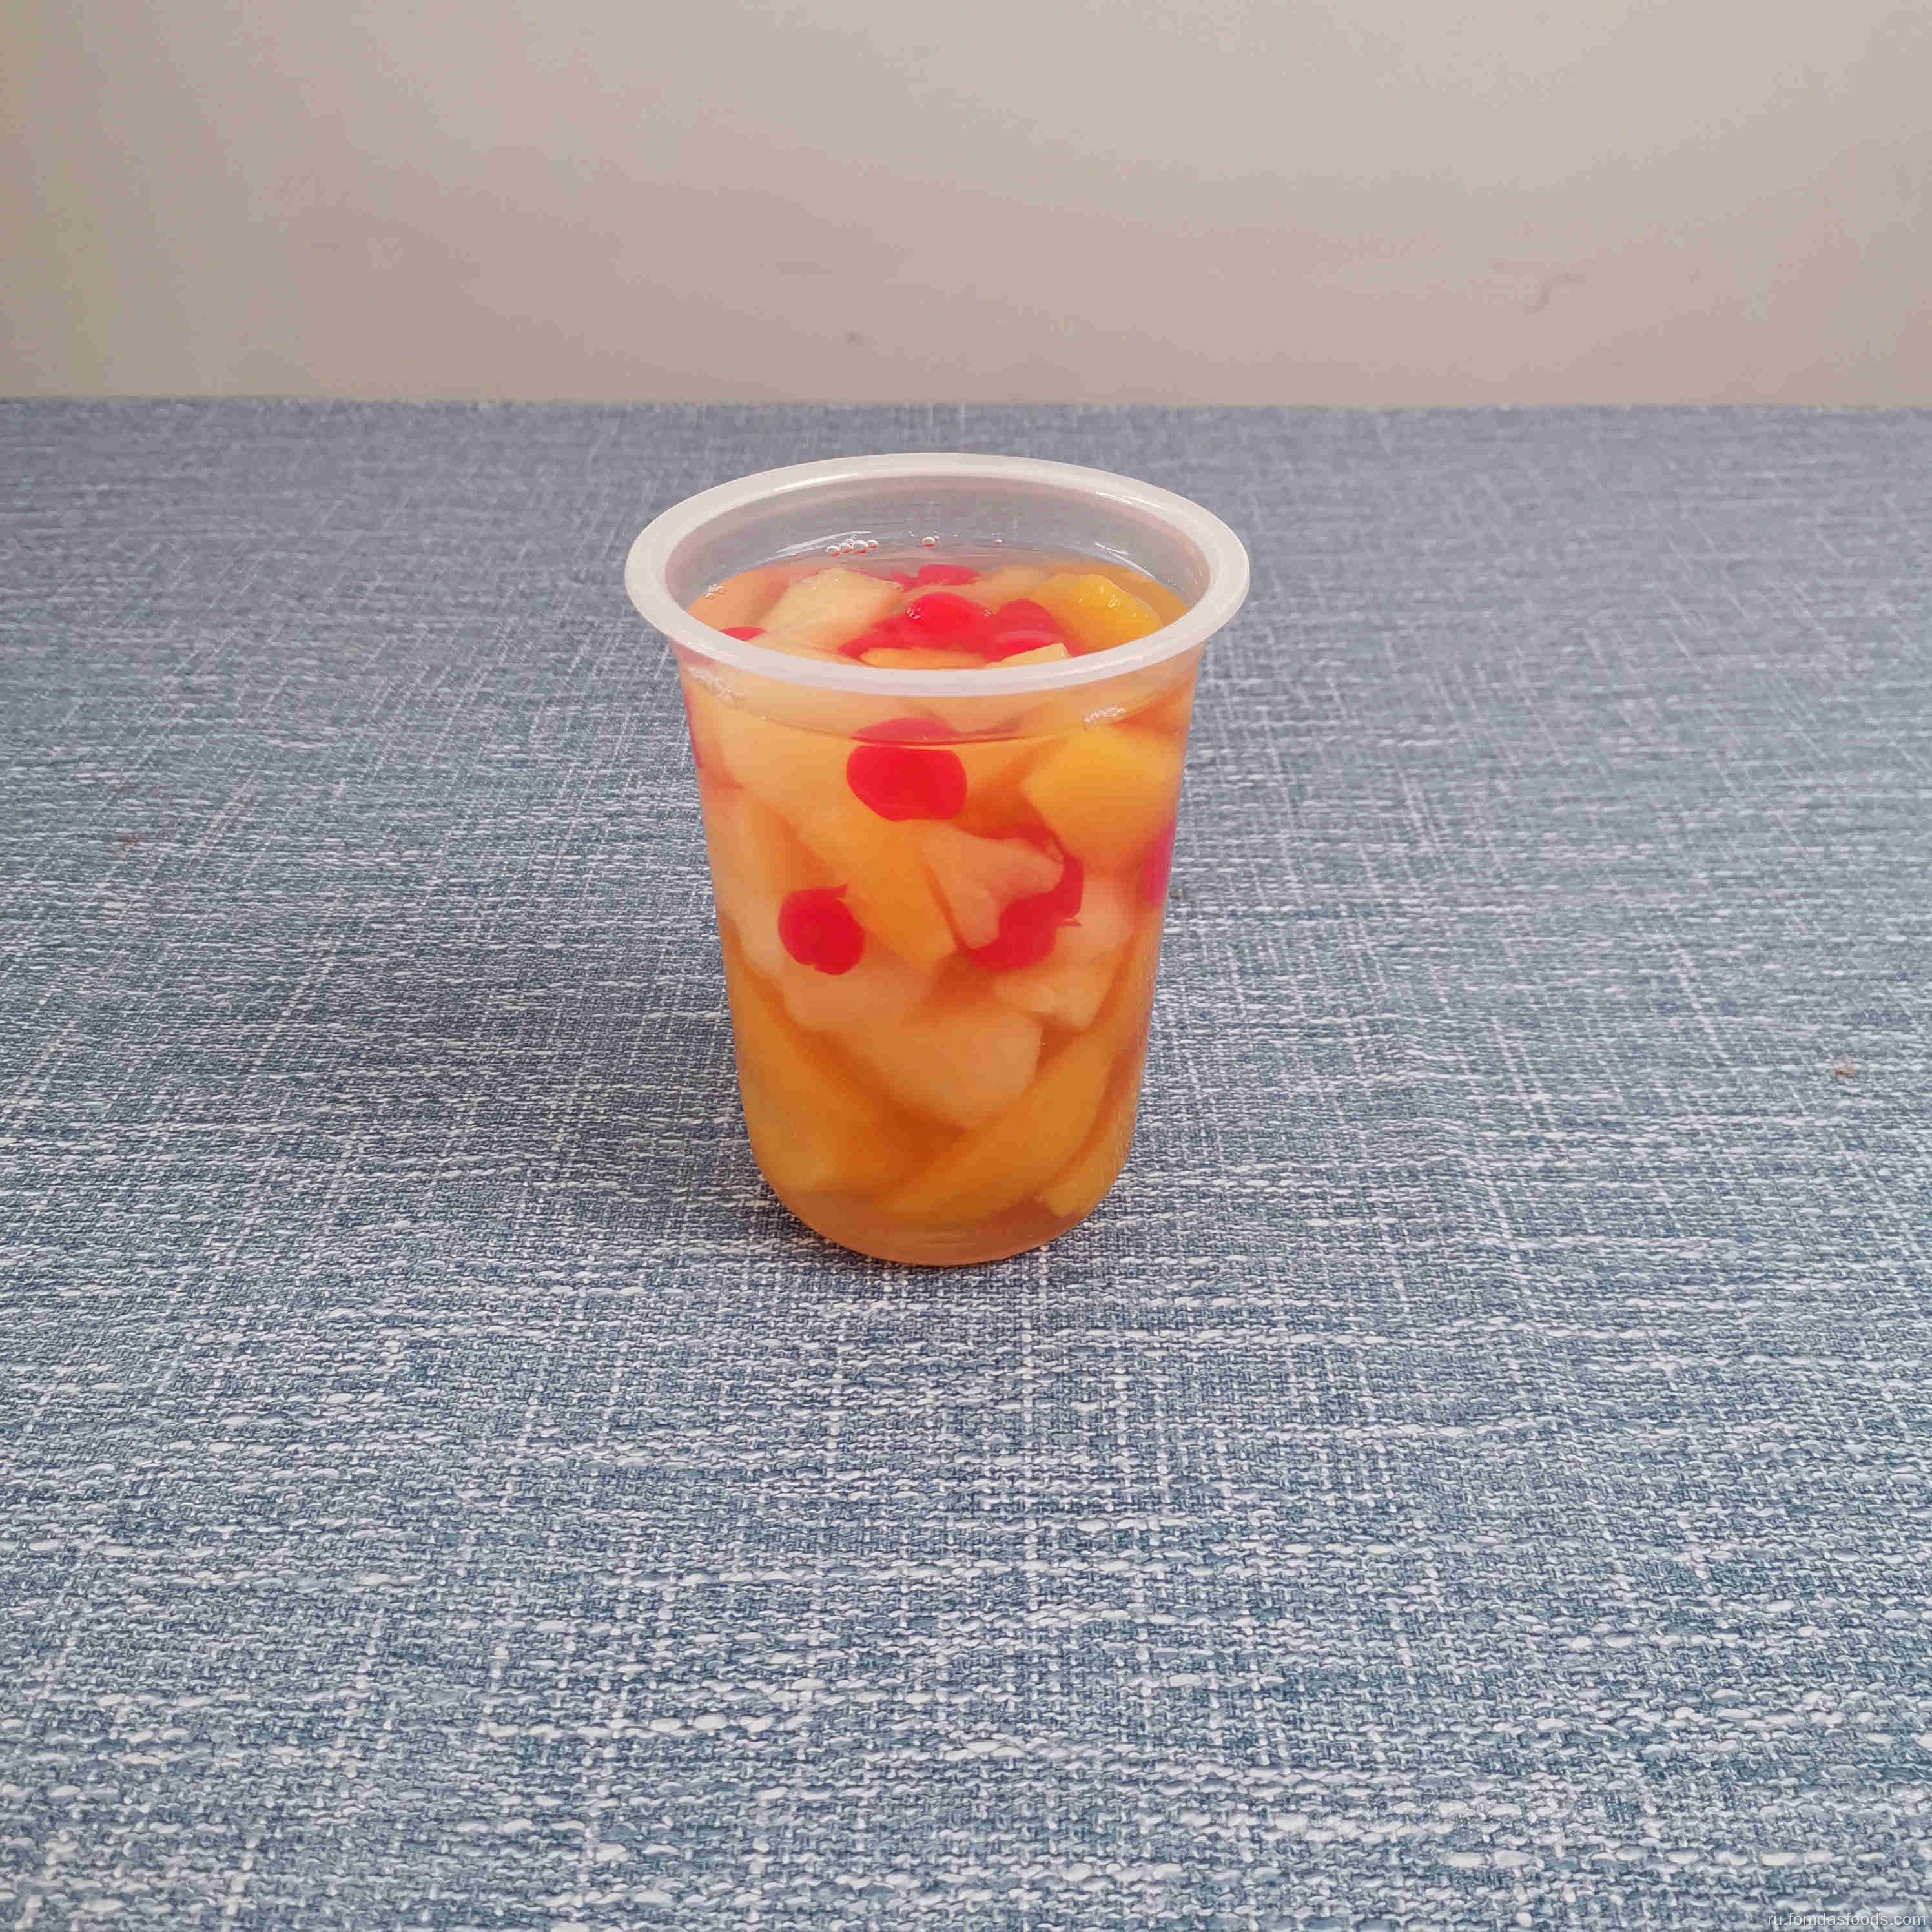 567 г консервированных фруктовых коктейлей в Splenda